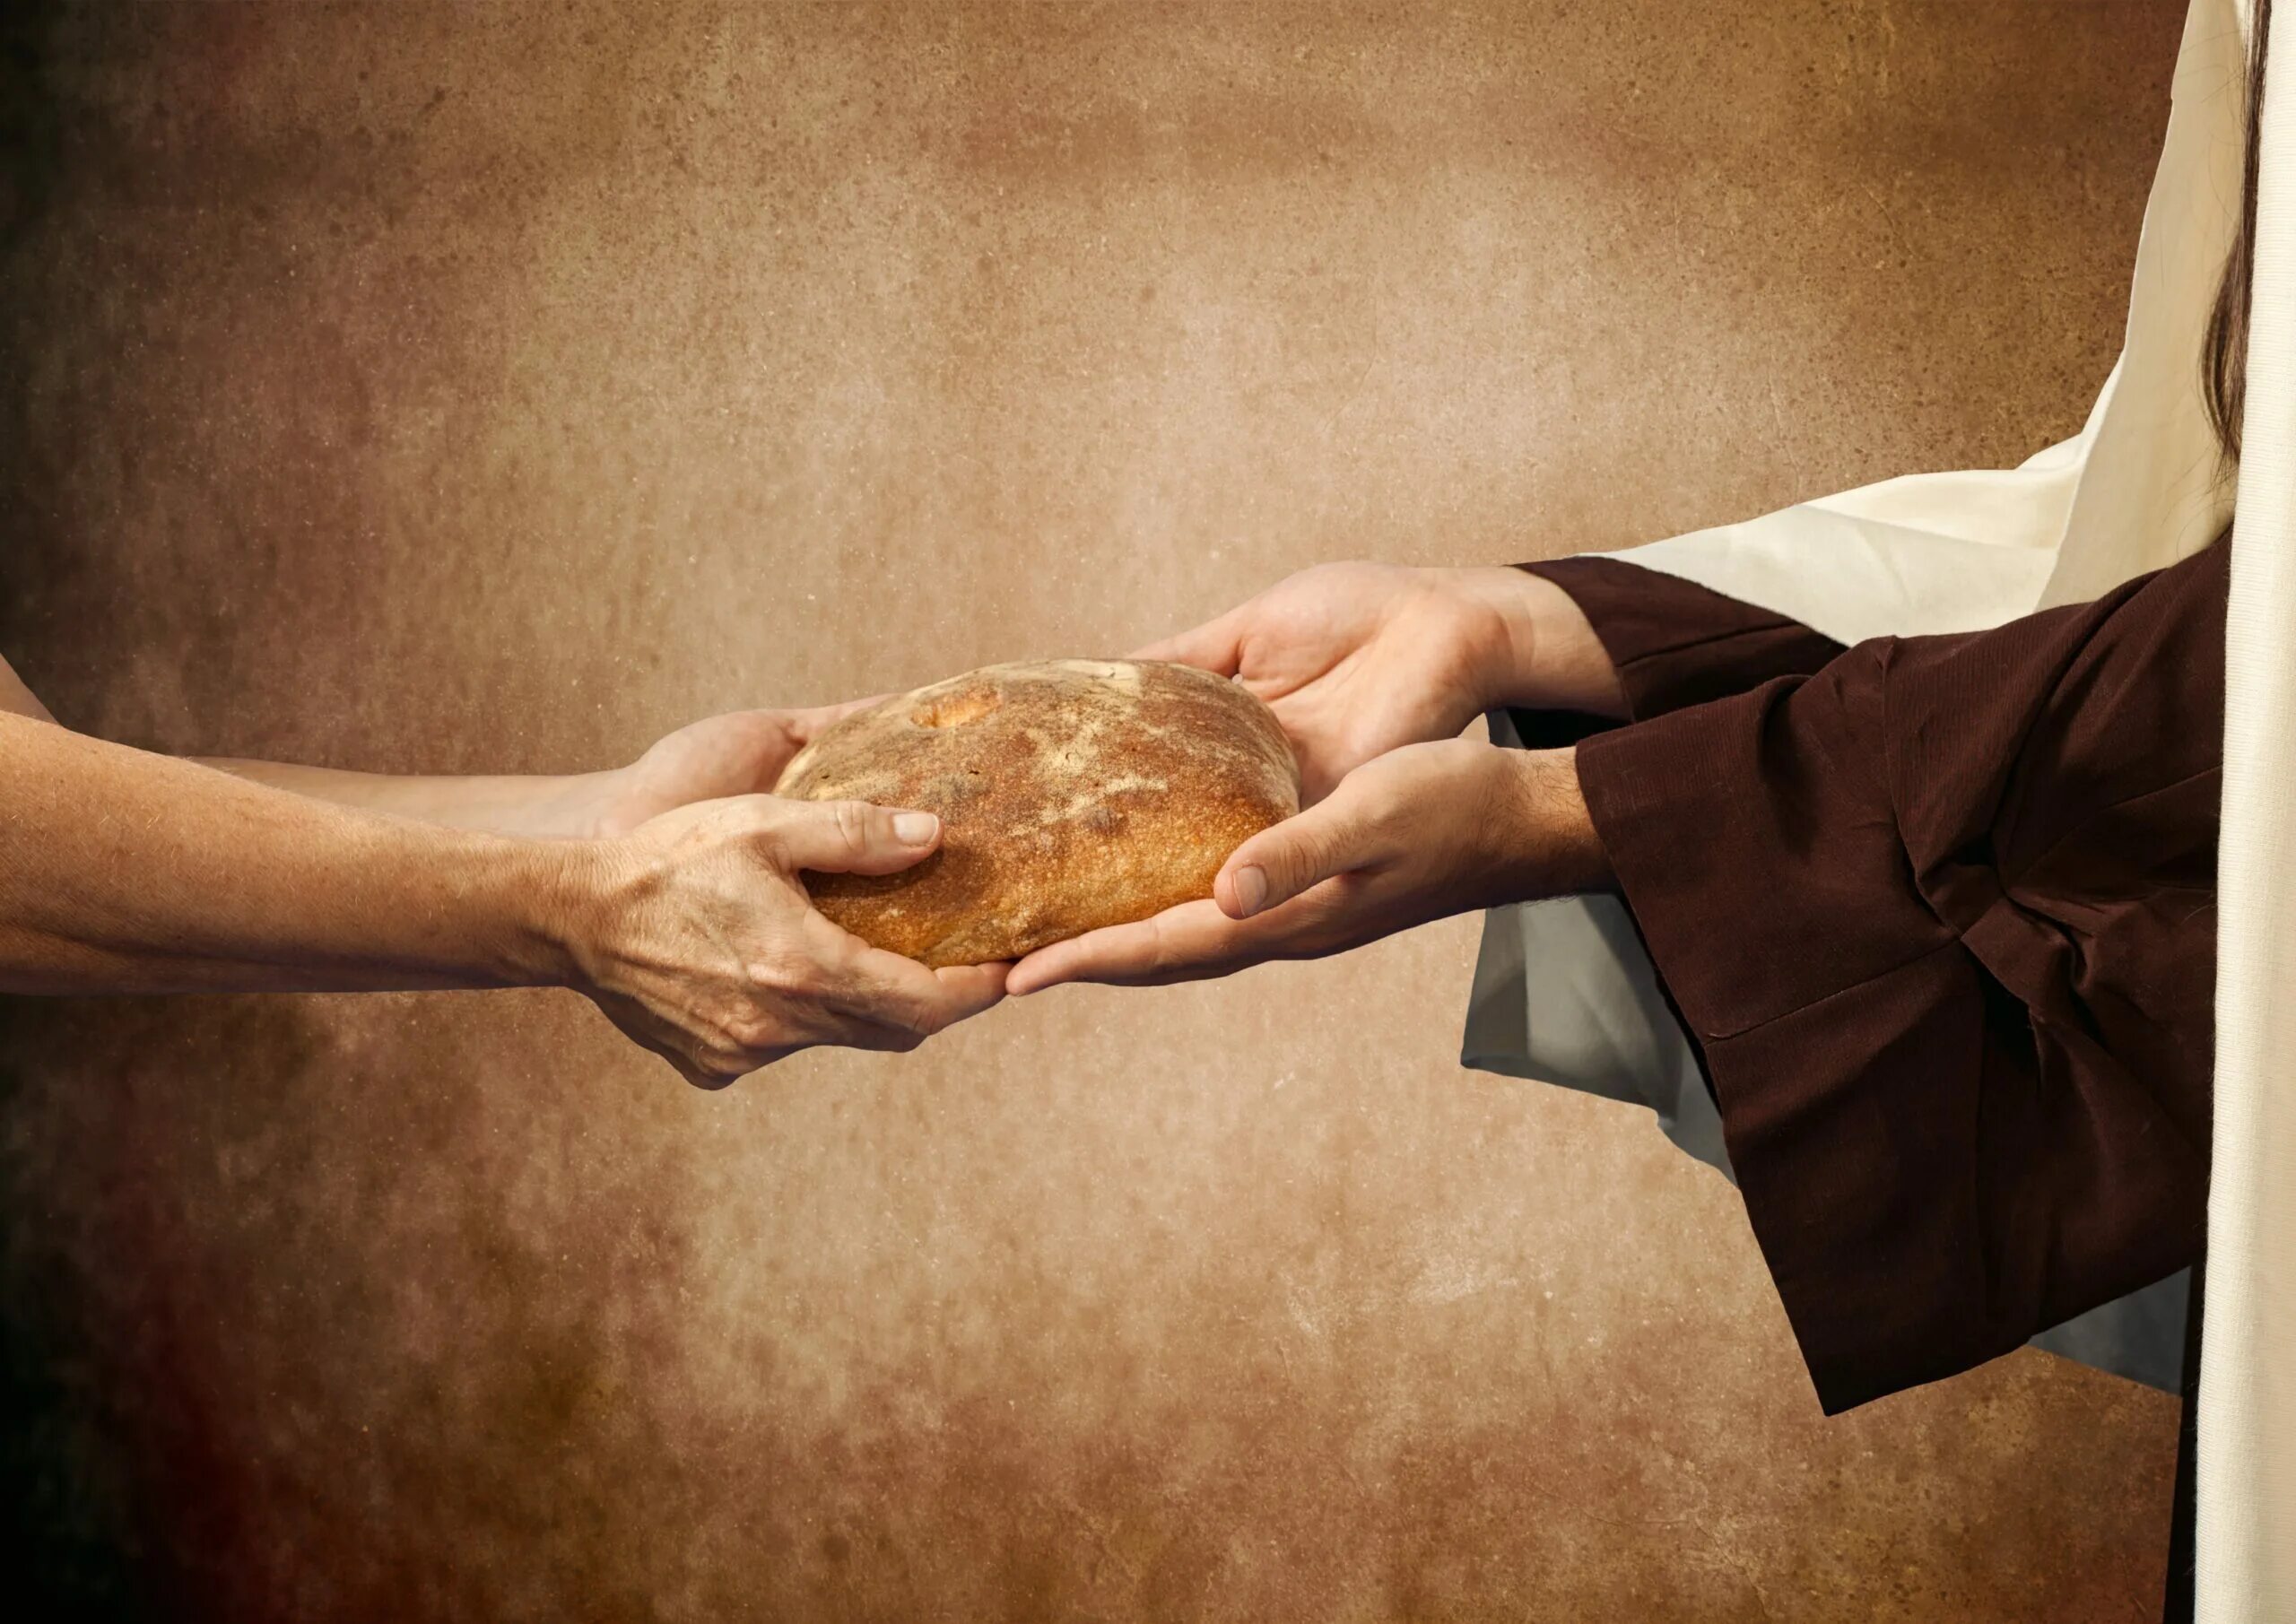 Хлеб в руках. Руки хлебобулочные изделия. Христос и хлеб. Делиться хлебом. Голод золотой